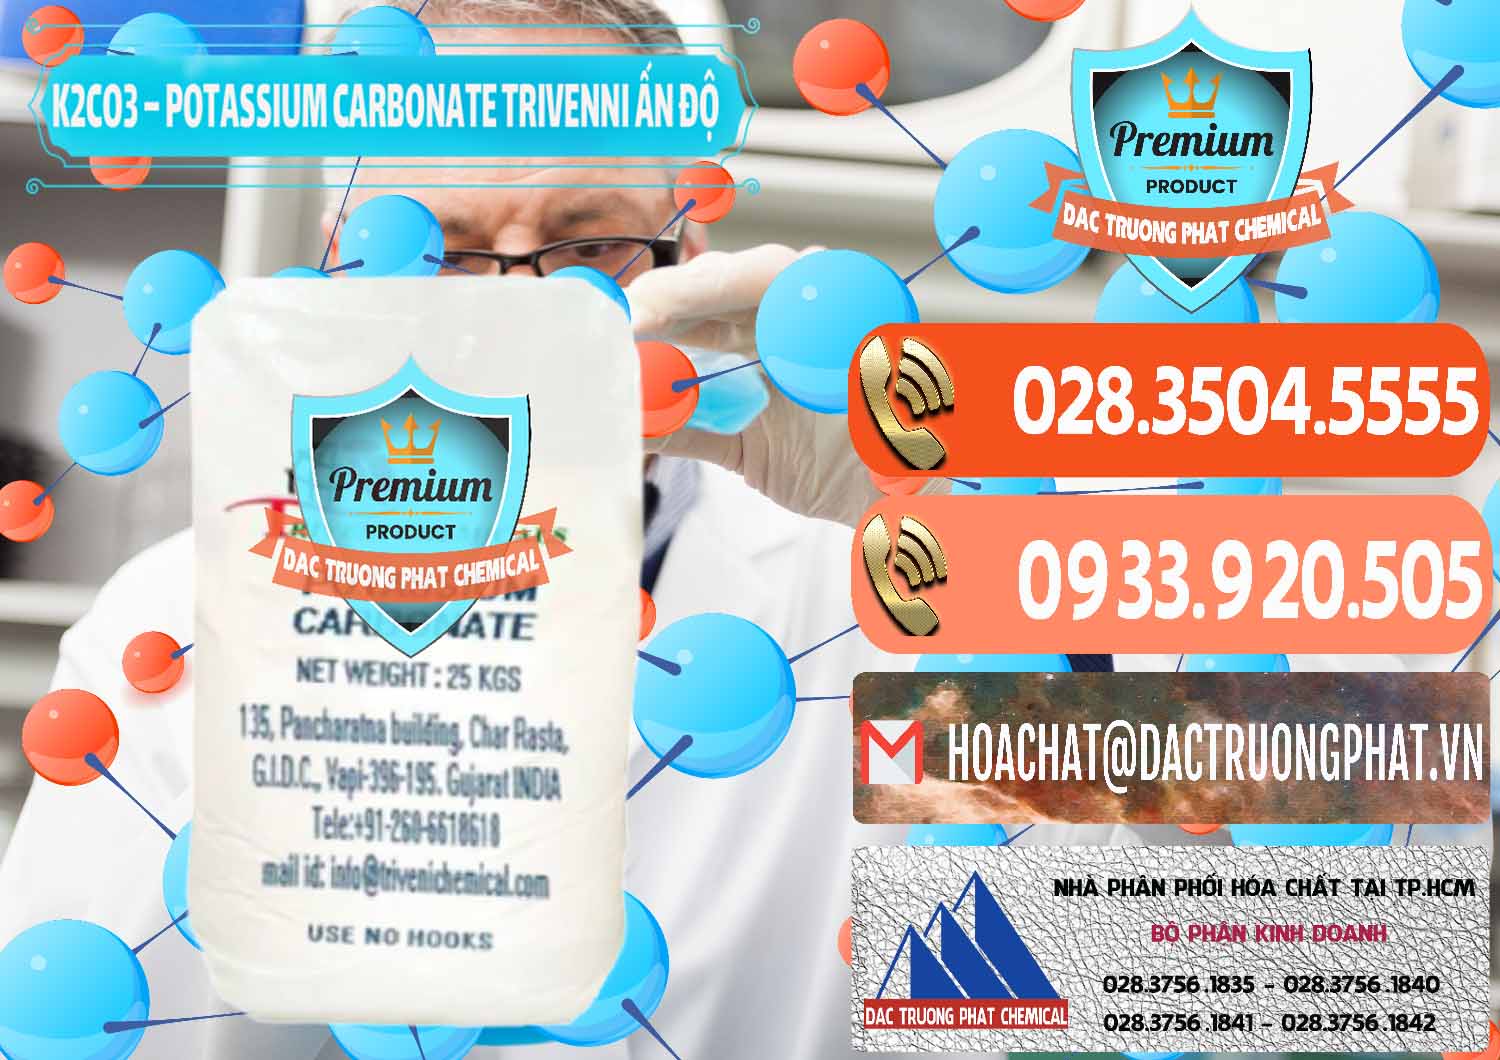 Cty bán _ cung ứng K2Co3 – Potassium Carbonate Trivenni Ấn Độ India - 0473 - Cty chuyên kinh doanh - phân phối hóa chất tại TP.HCM - hoachatmientay.com